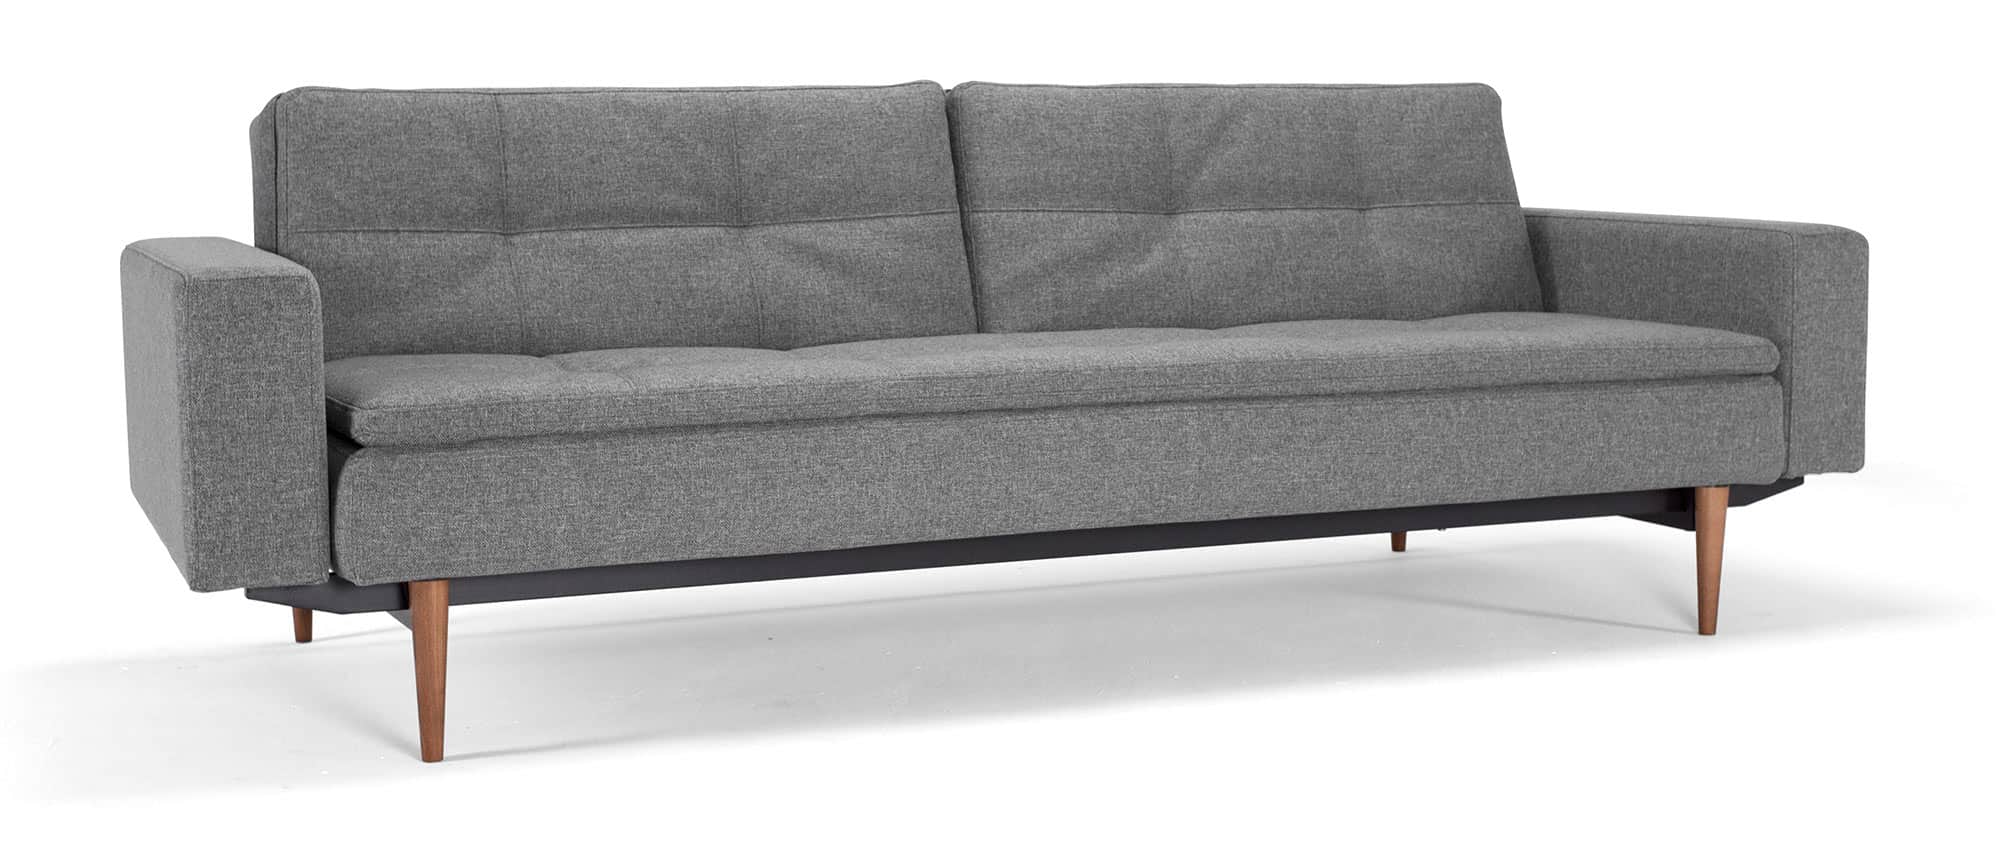 graues Innovation Schlafsofa DUBLEXO mit Armlehnen und Gästebett-Funktion im skandinavischen Design - Liegefläche 110x200 cm